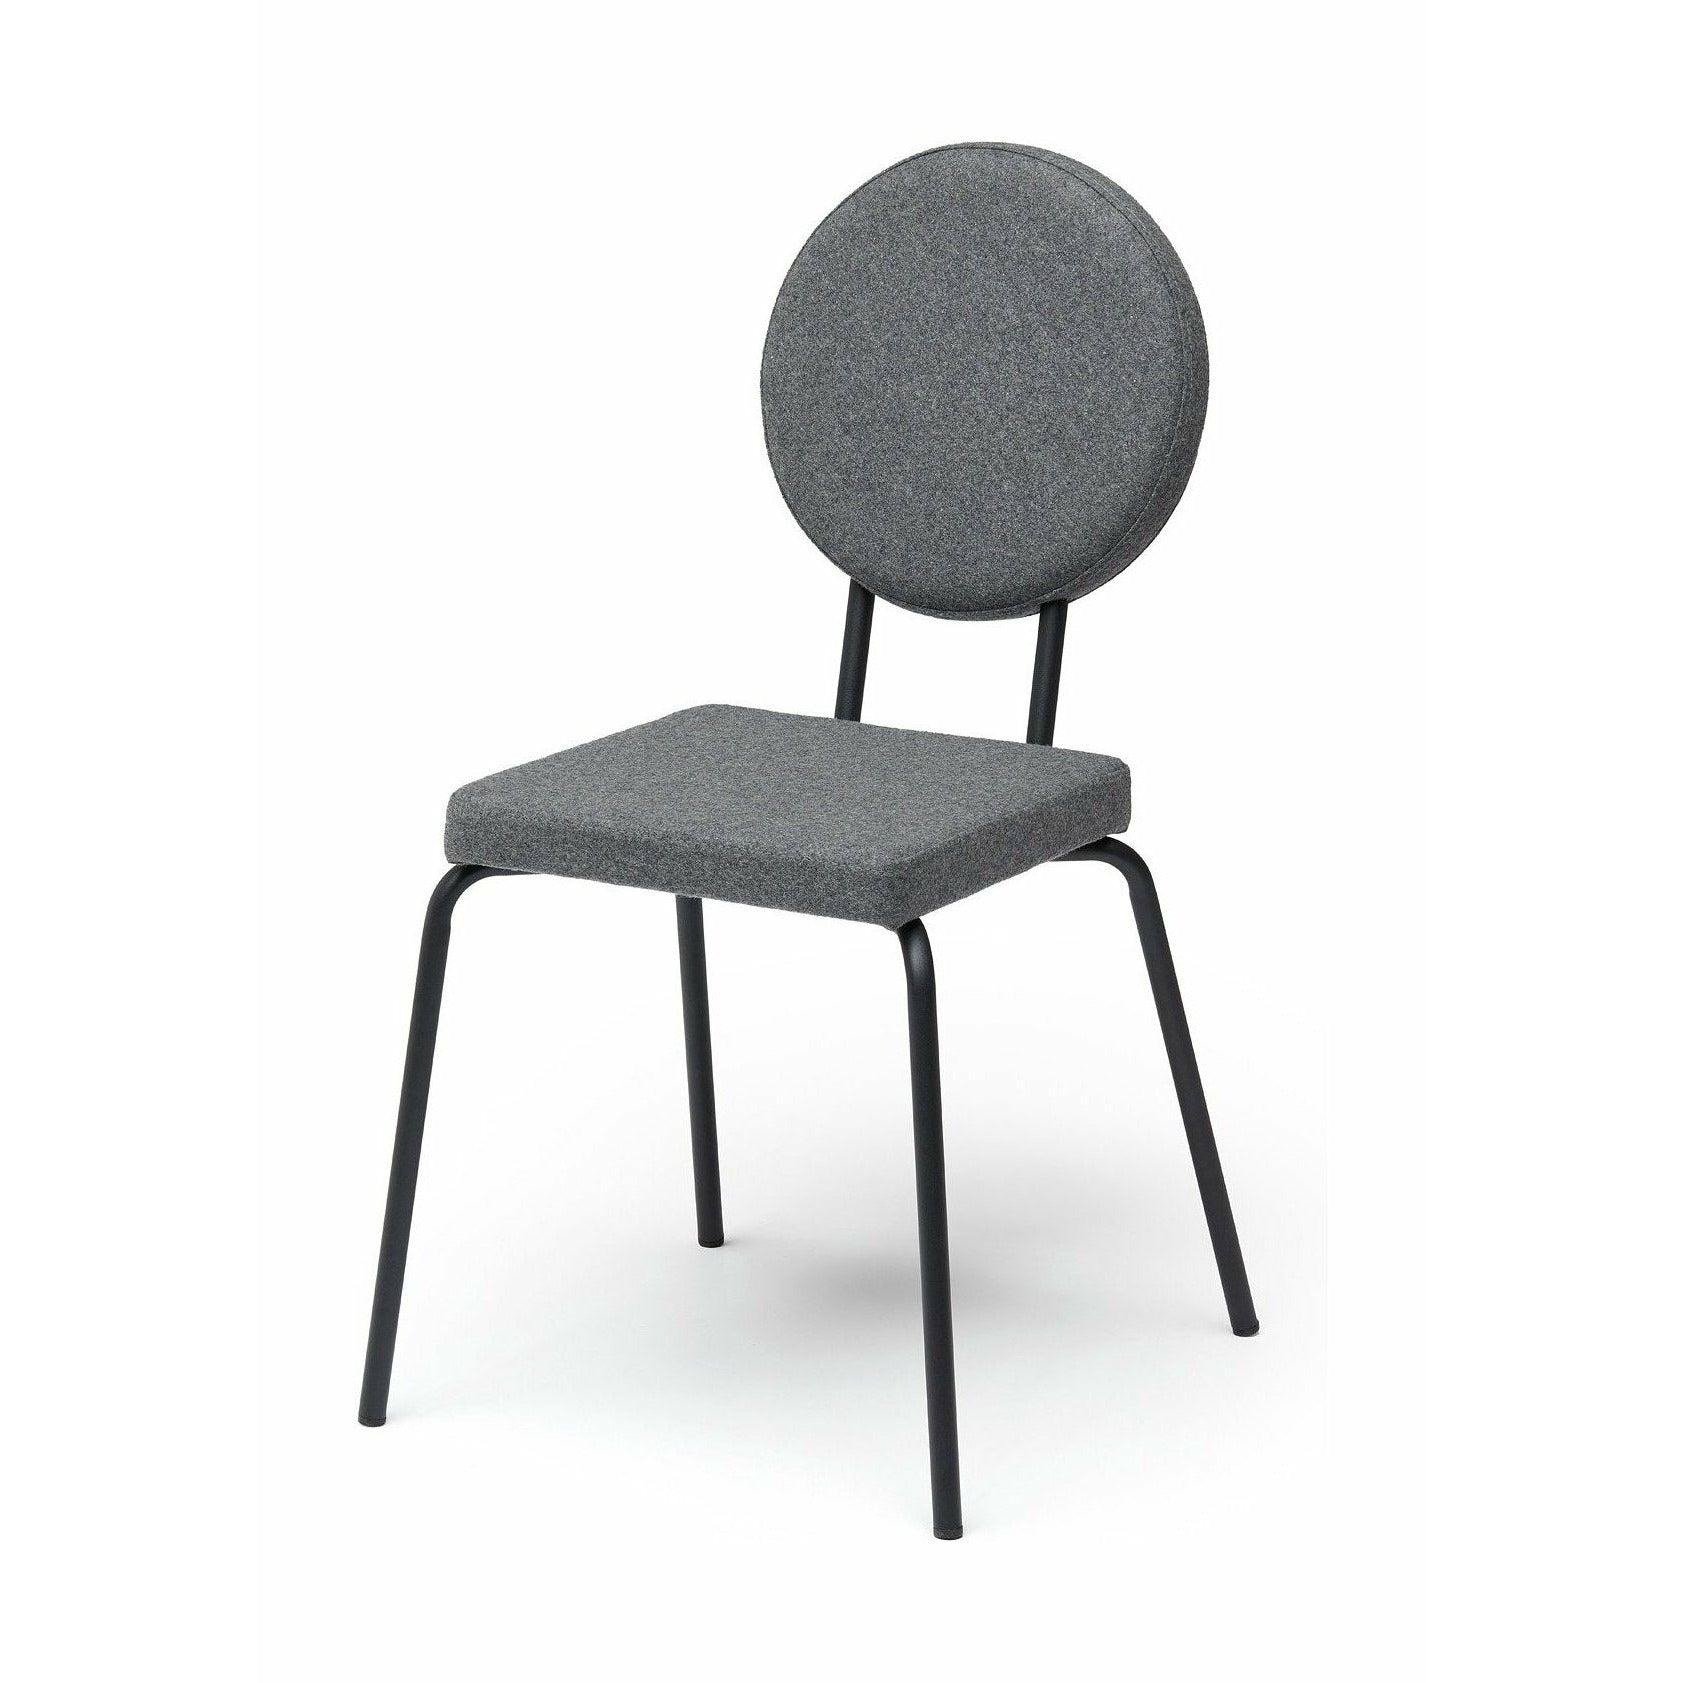 Puik Option chaise siège carré / dossier rond, gris clair